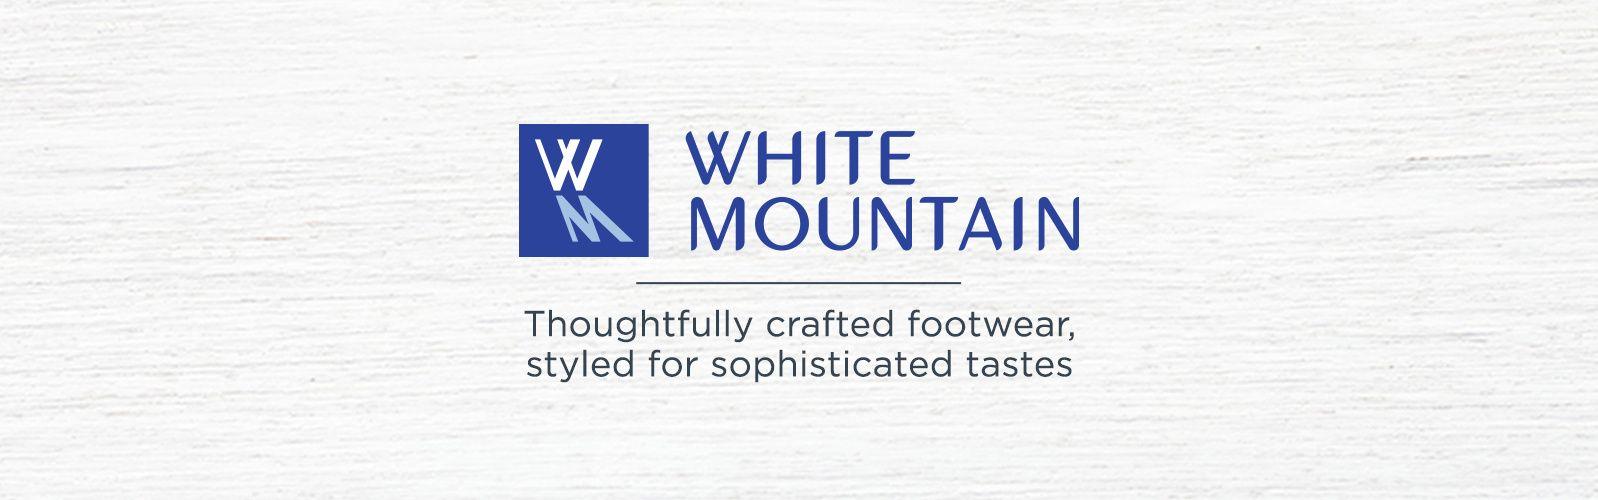 Blue and White Mountain Logo - White Mountain